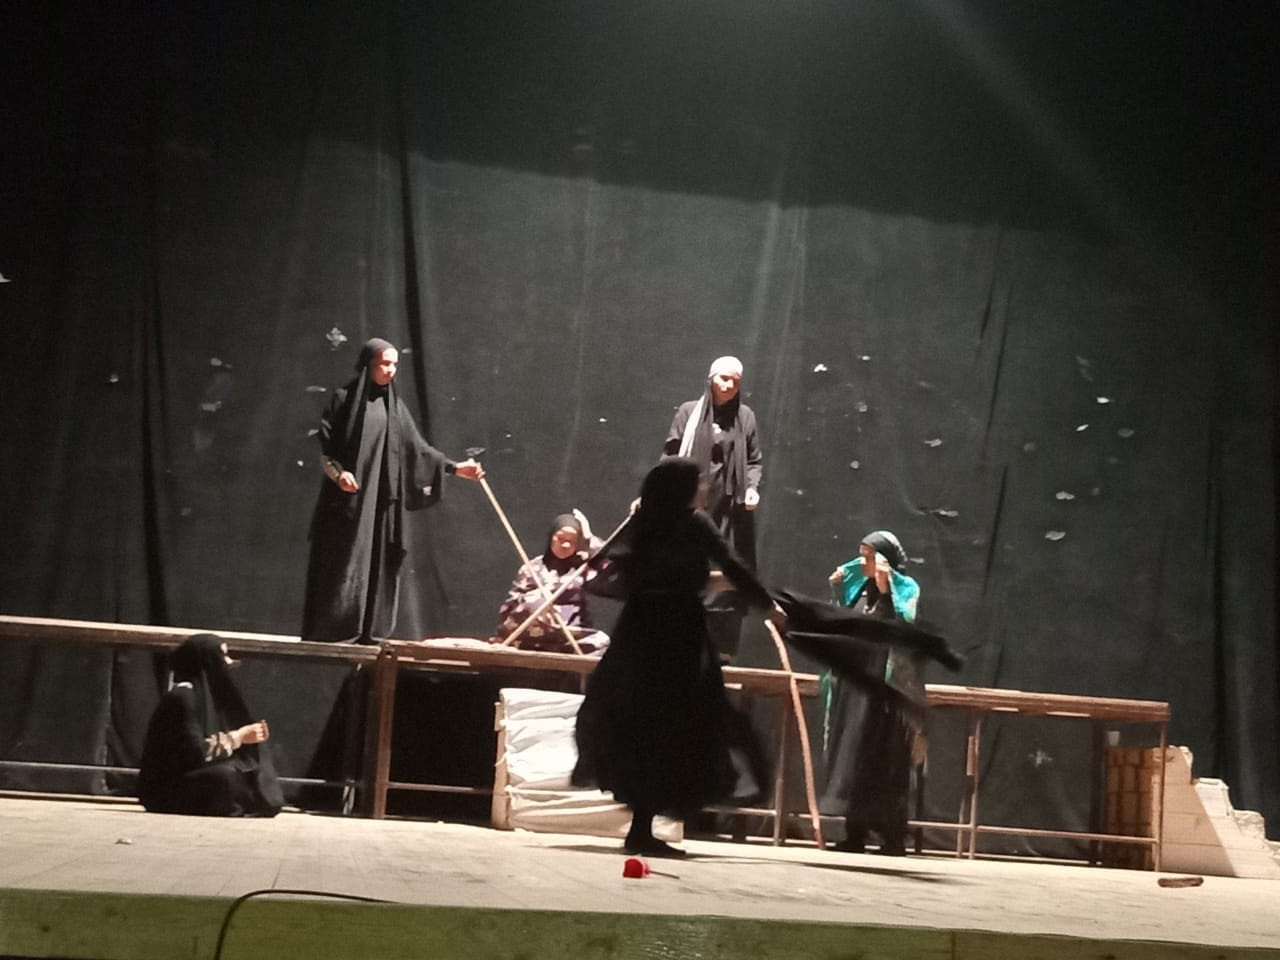  مدينة النساء  و  حرف سين  في عروض نوادي المسرح بسوهاج | صور